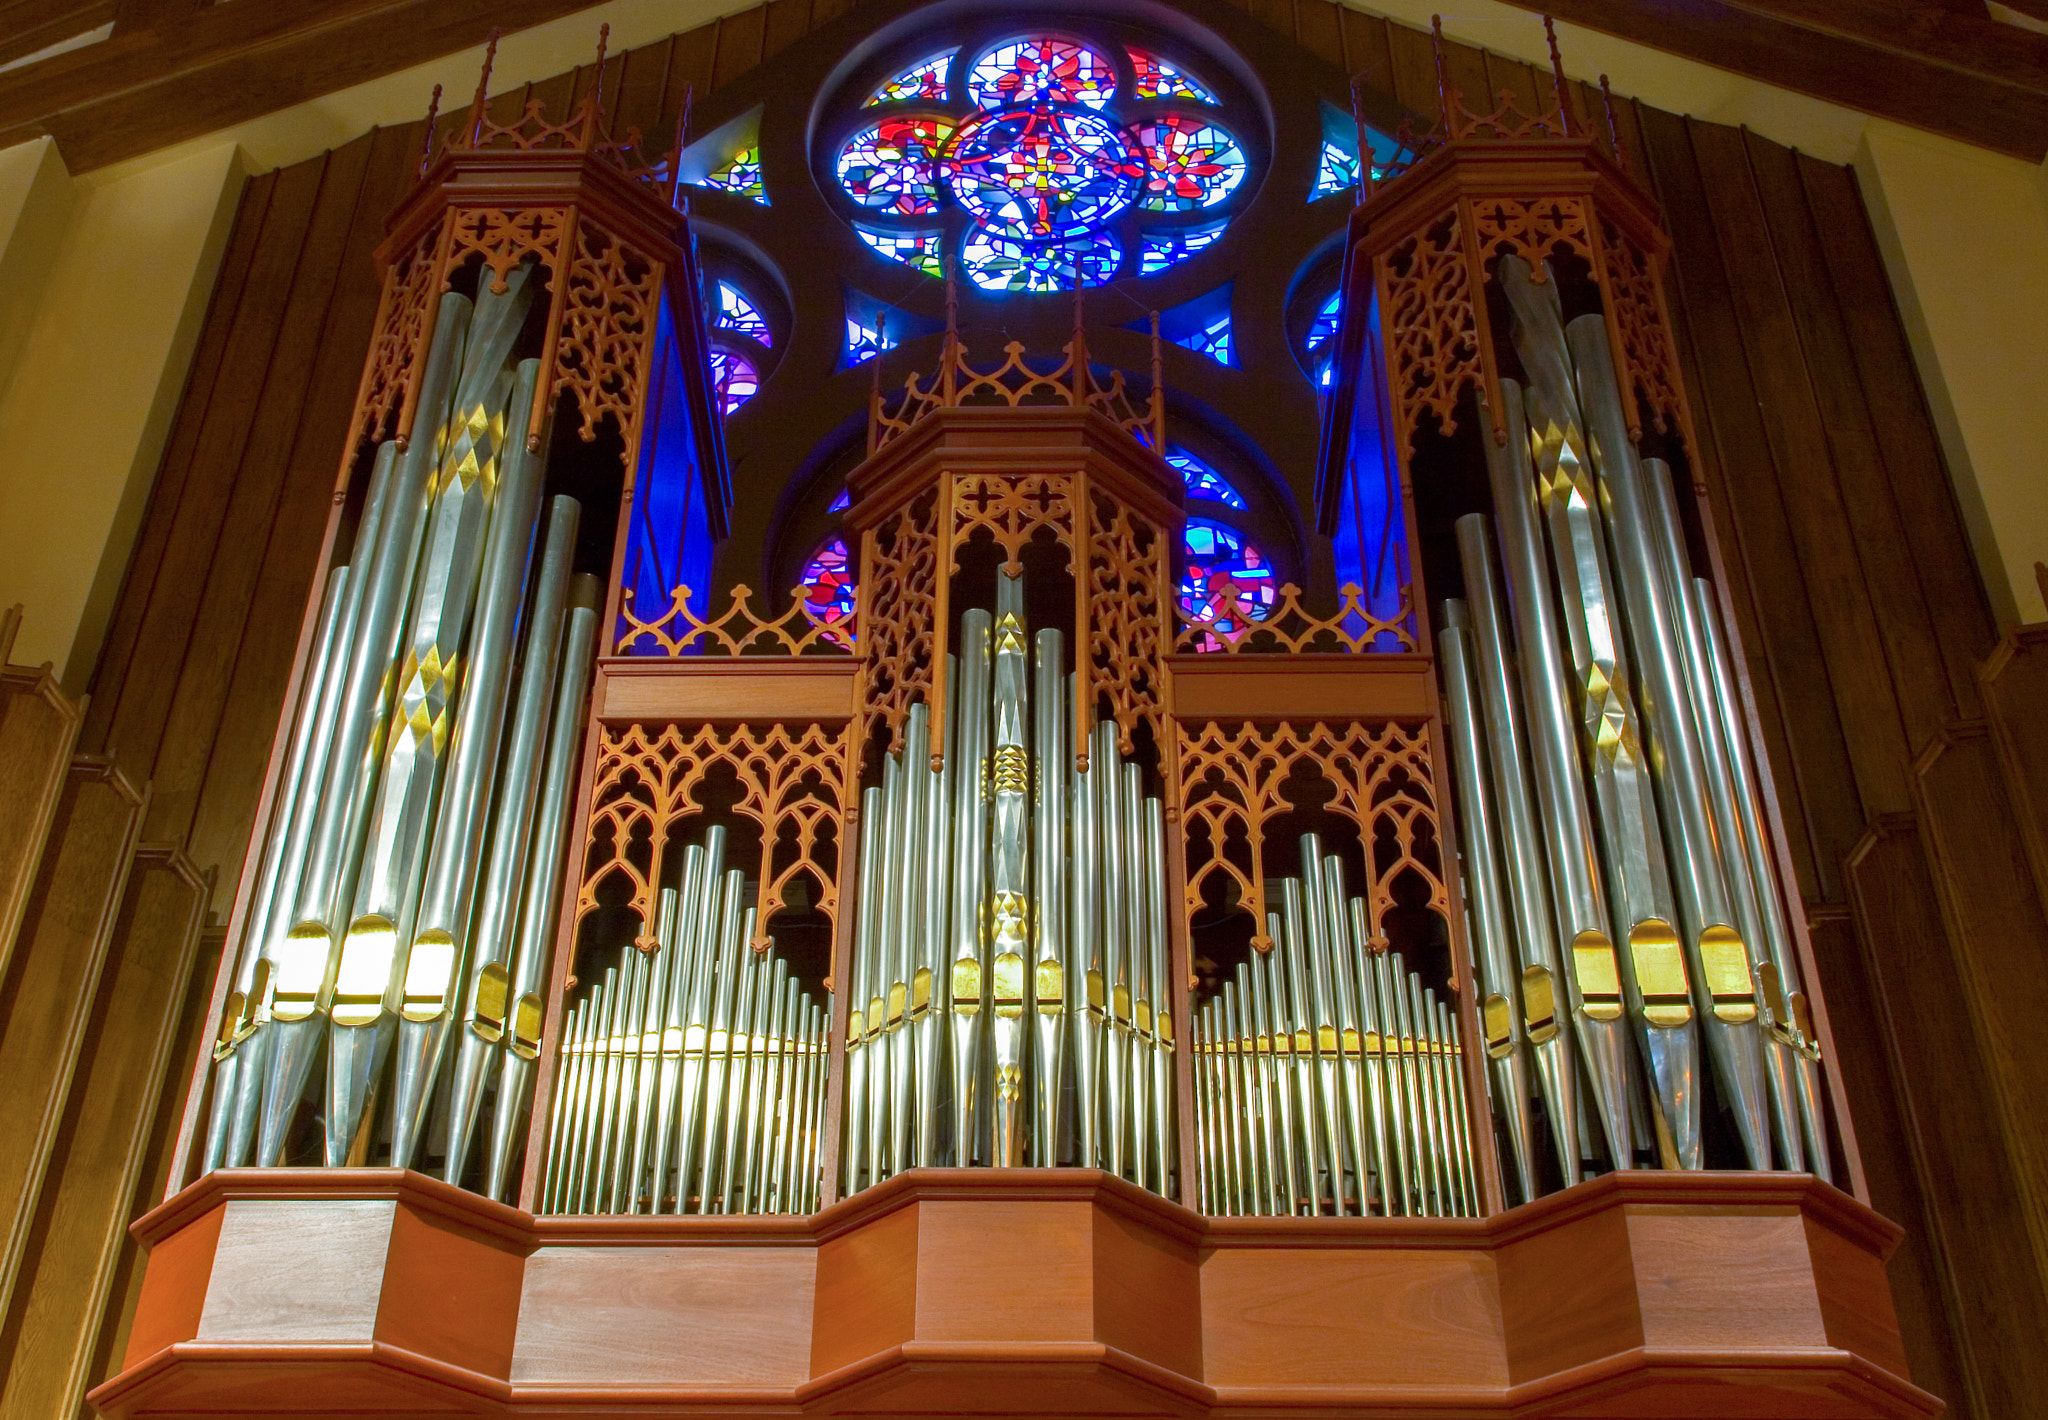 Canon EOS 30D sample photo. Church organ photography